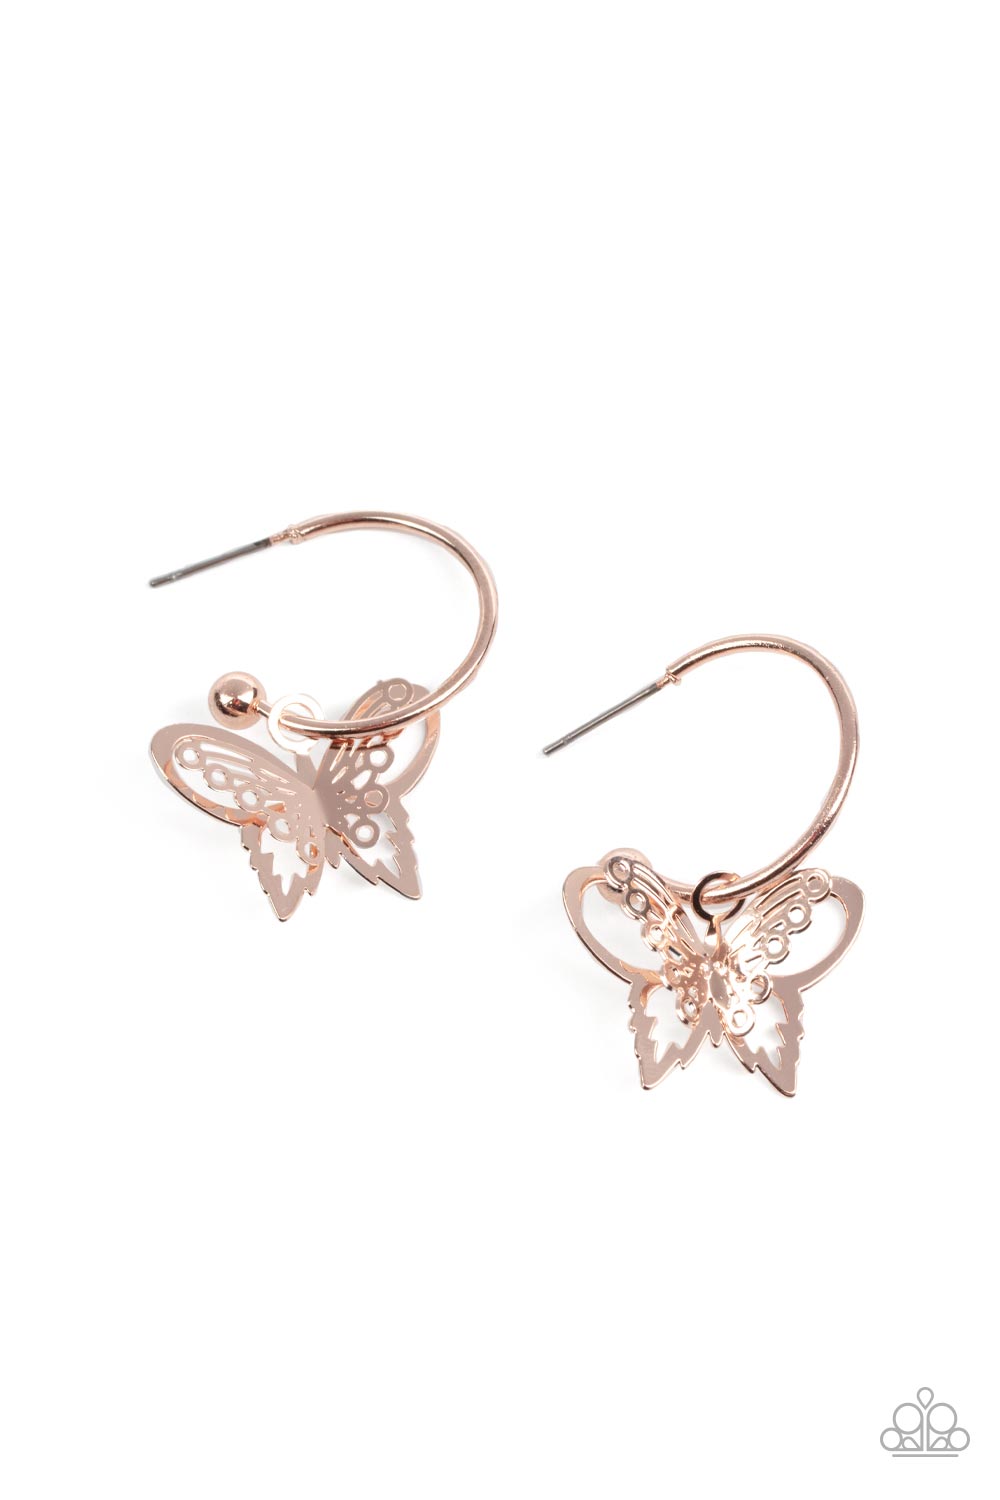 Butterfly Freestyle - Rose Gold butterfly earrings